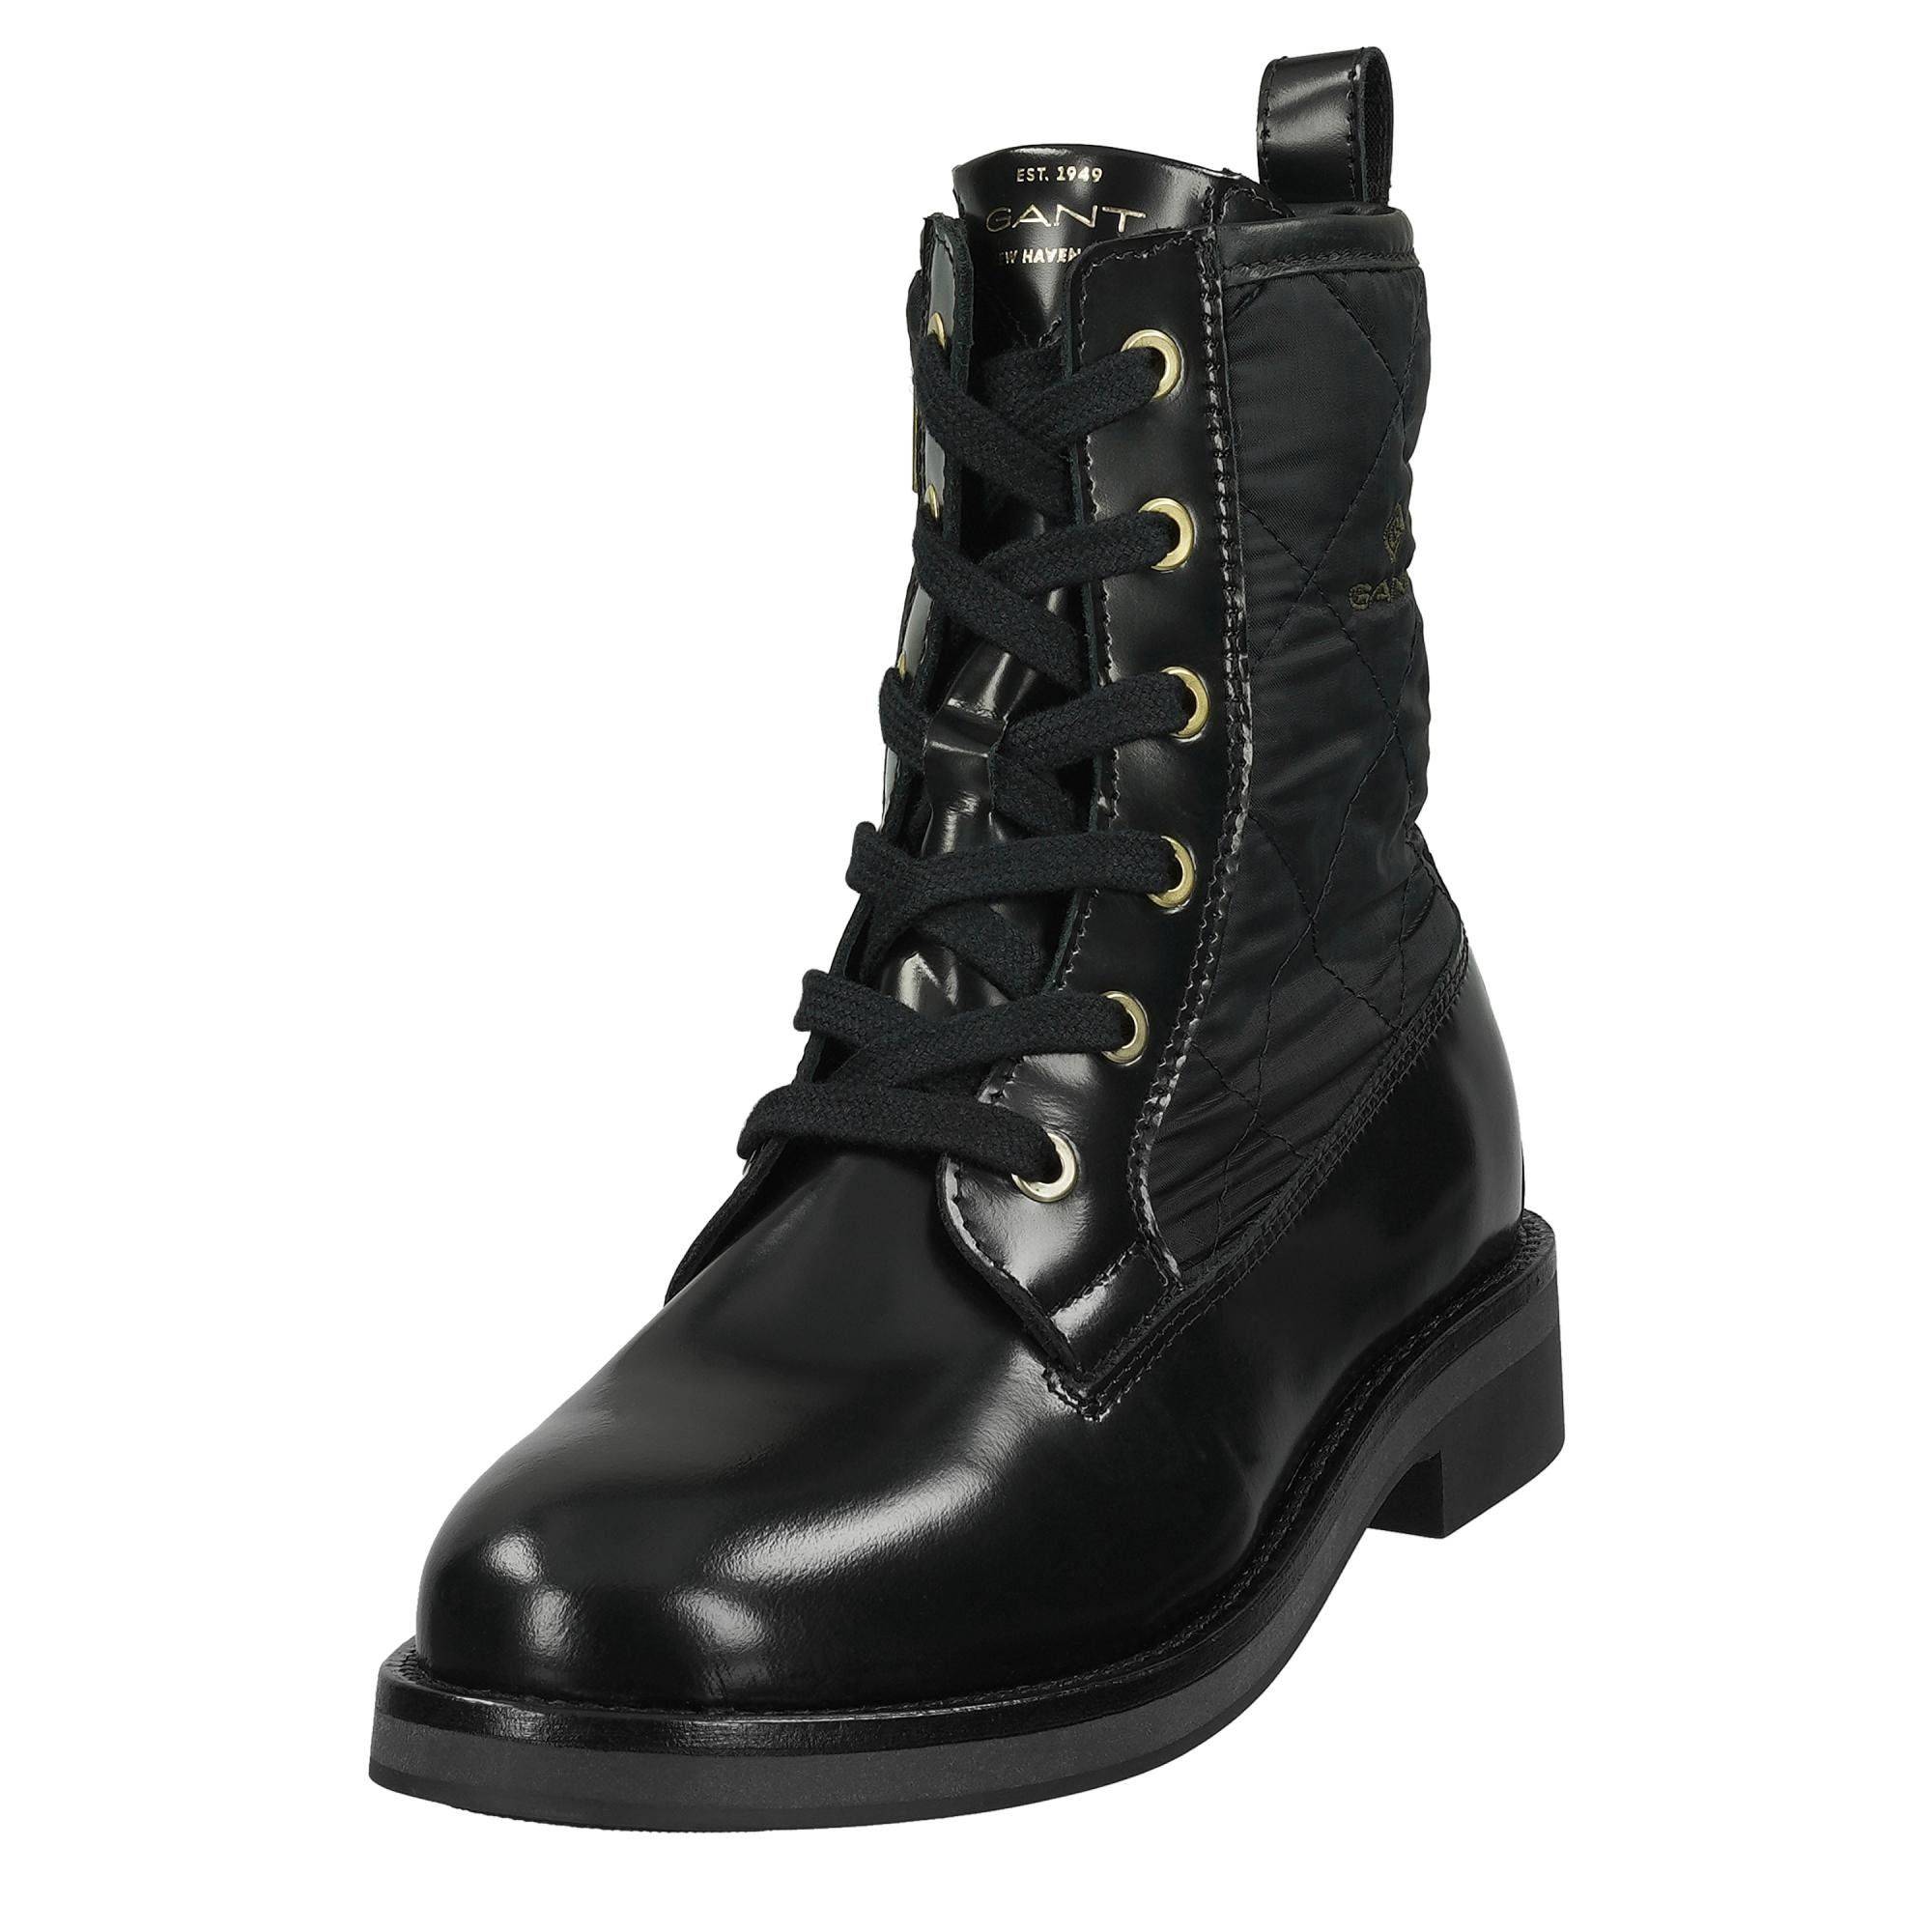 Купить Женские высокие ботинки Gant, цвет черный, Модель: MALIIN, арт:21541955 - нет в наличии